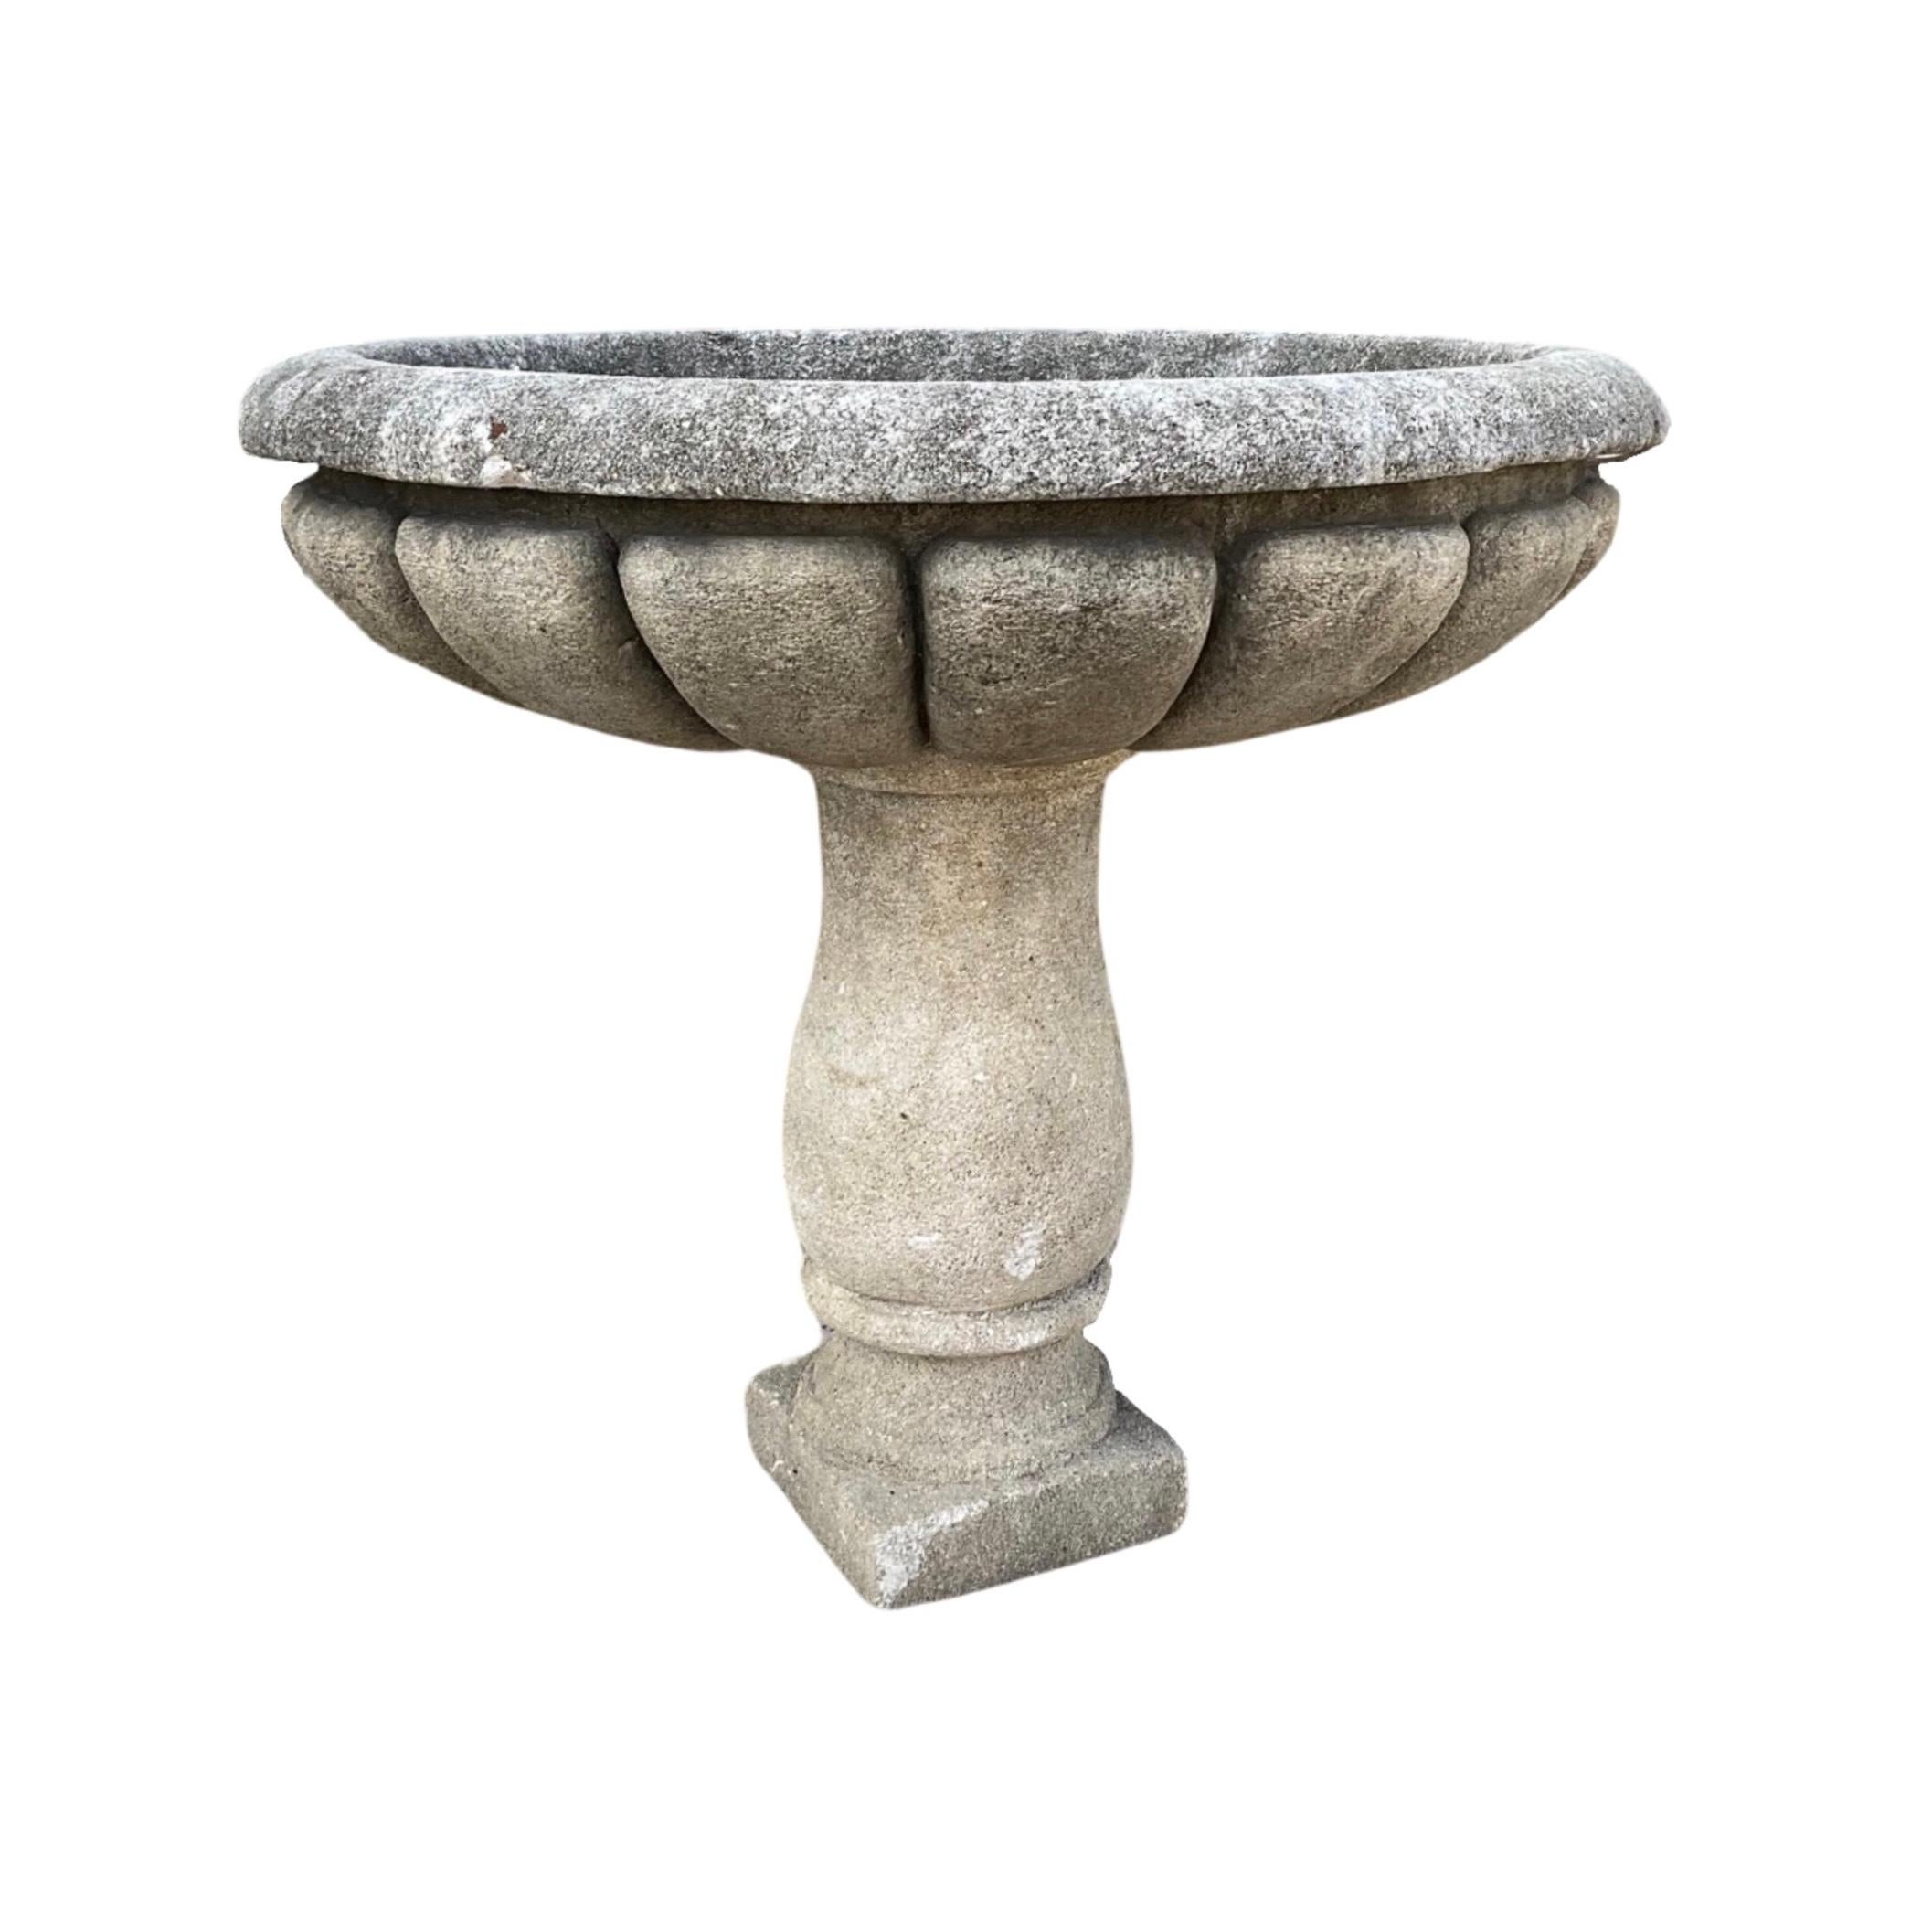 Ce bain d'oiseaux en pierre calcaire française du XVIIIe siècle est un ajout luxueux à tout espace extérieur. Son design circulaire sculpté à la main et sa base en forme de pilier en font un véritable objet unique. Fabriqué avec de la pierre